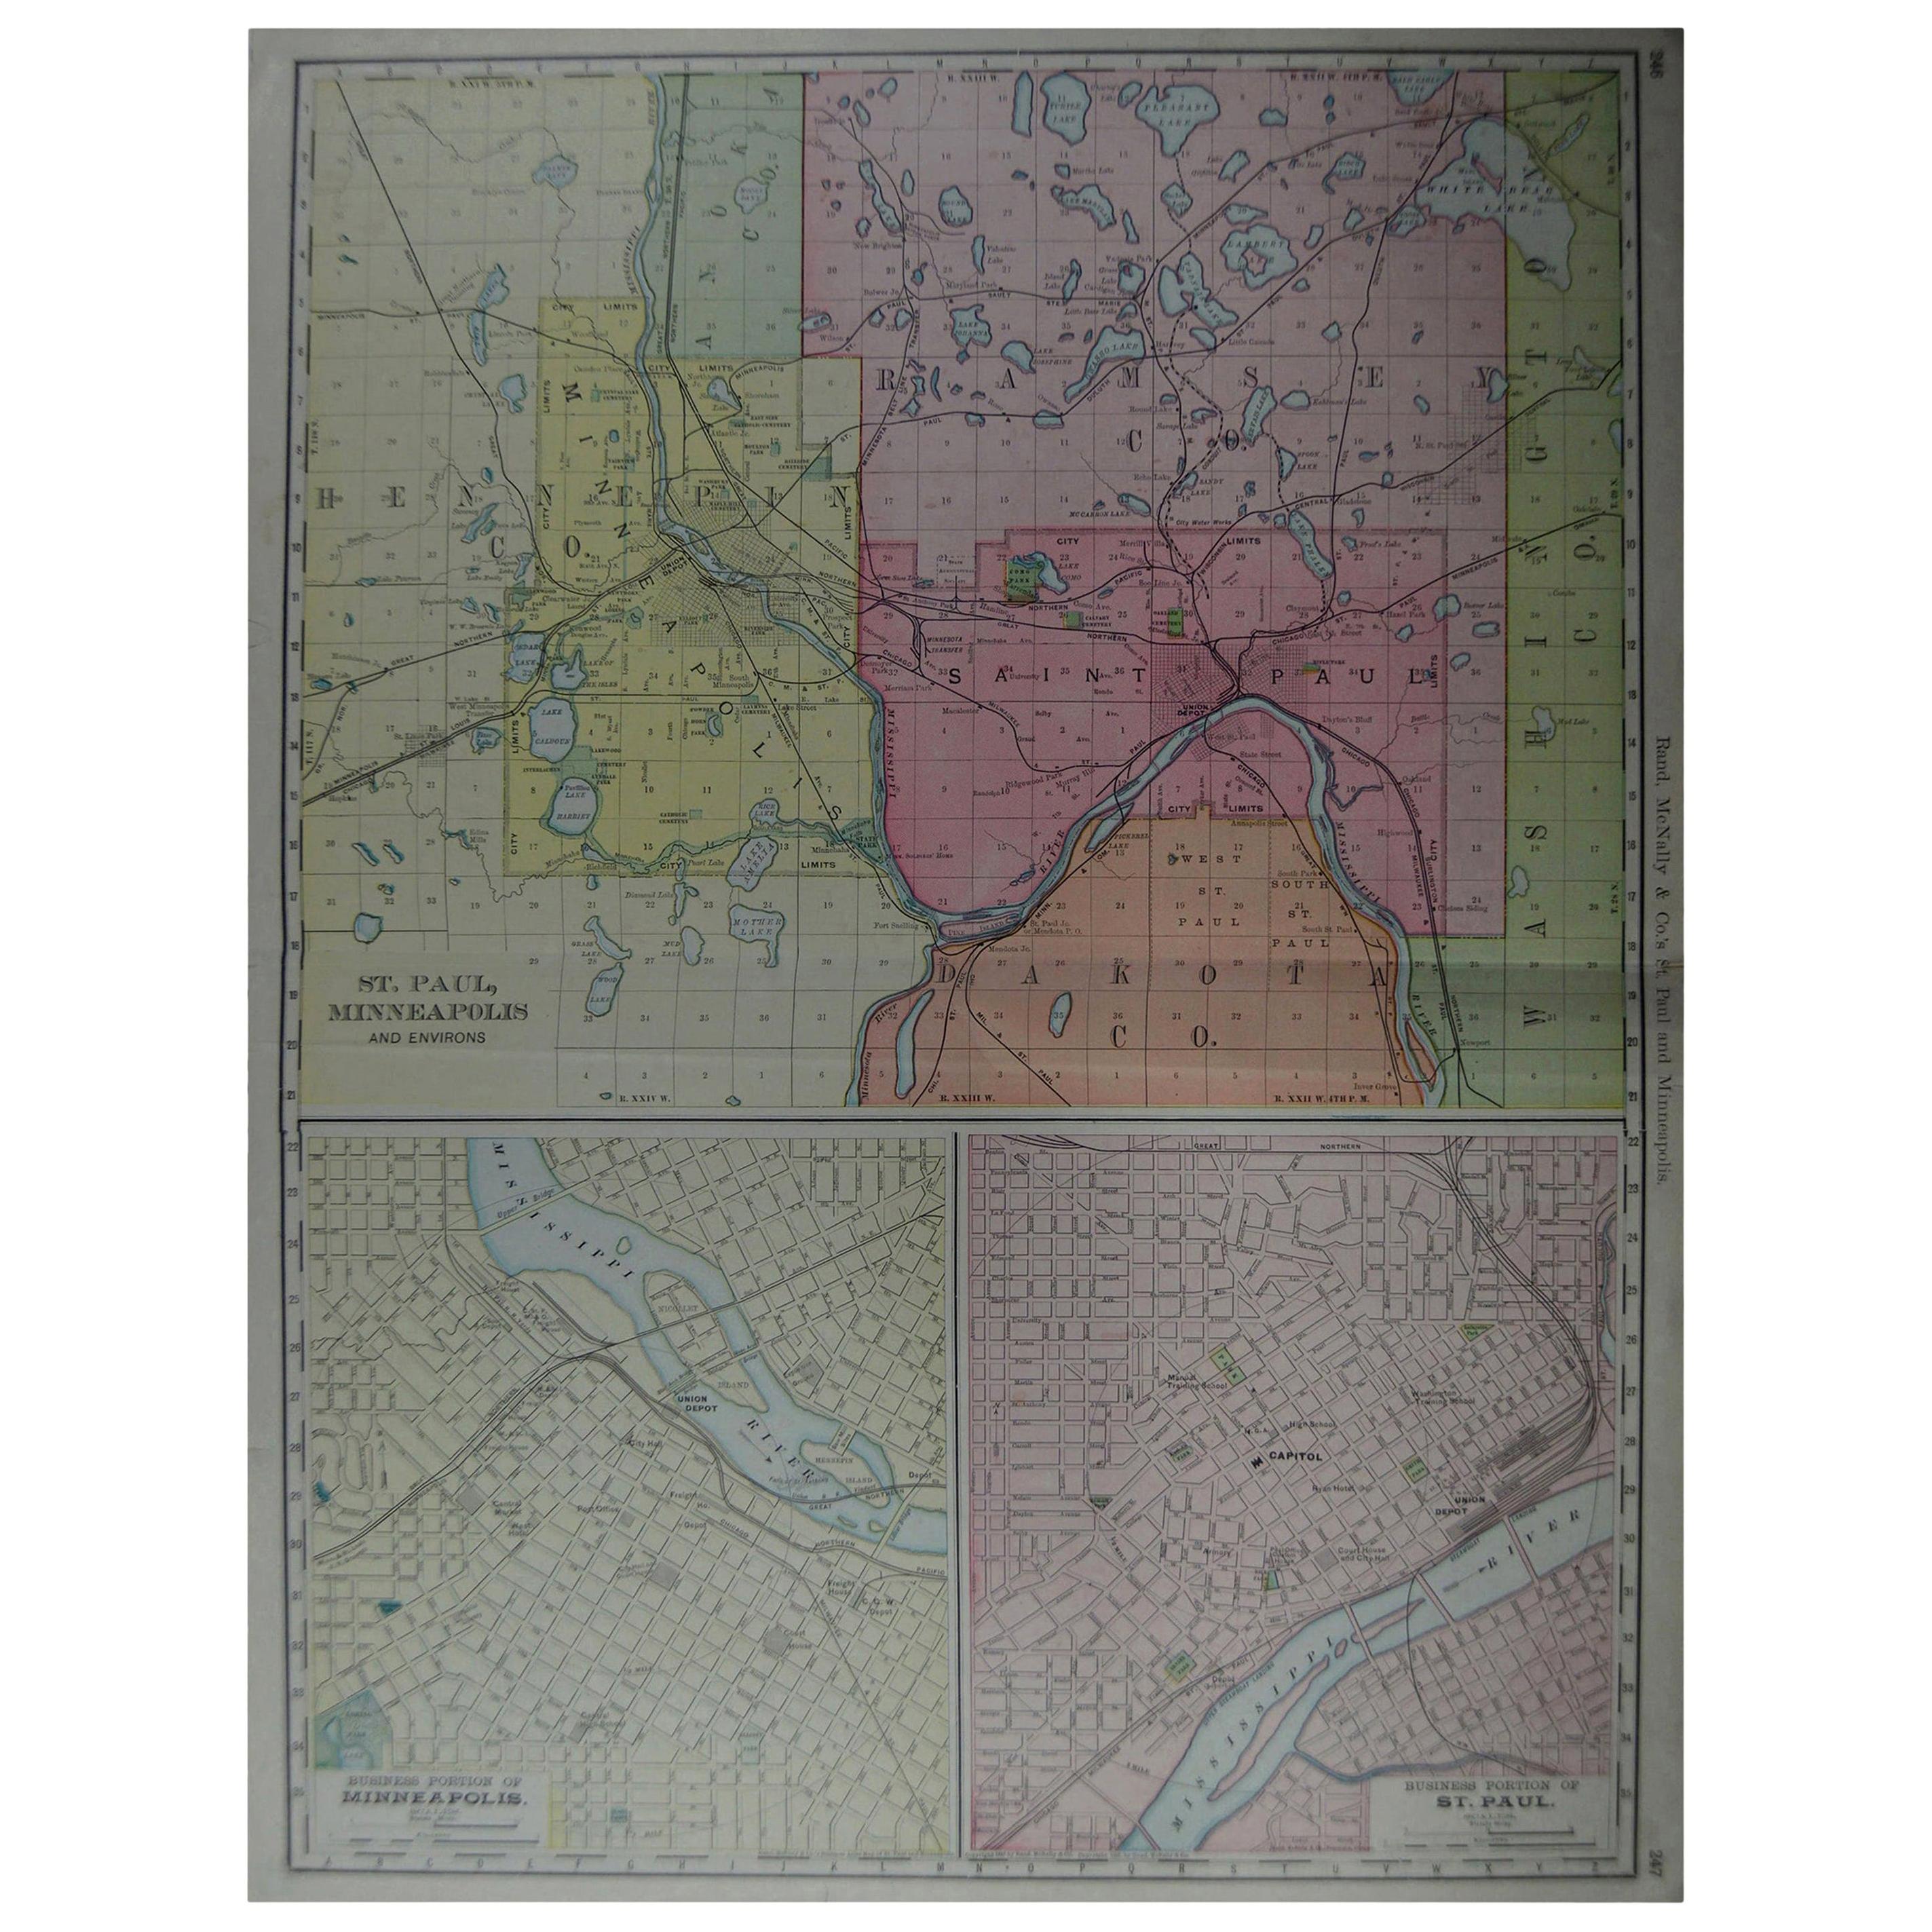 Grand plan de ville ancien de Minneapolis et St Paul, USA, circa 1900